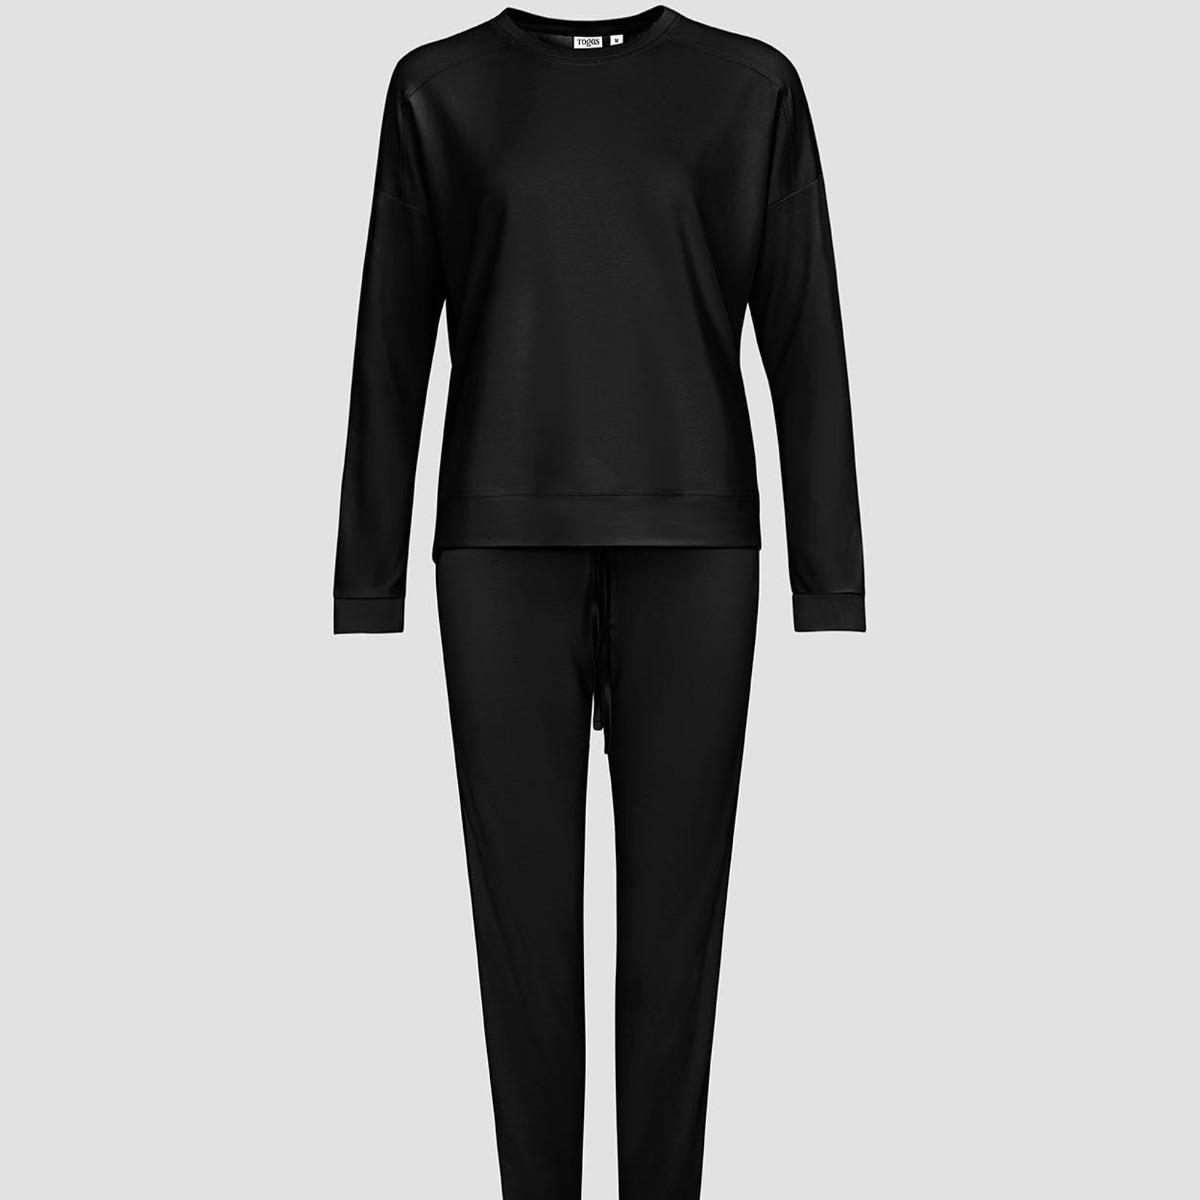 Женская пижама Togas Рене чёрная XS (42), цвет чёрный, размер 42 - фото 1